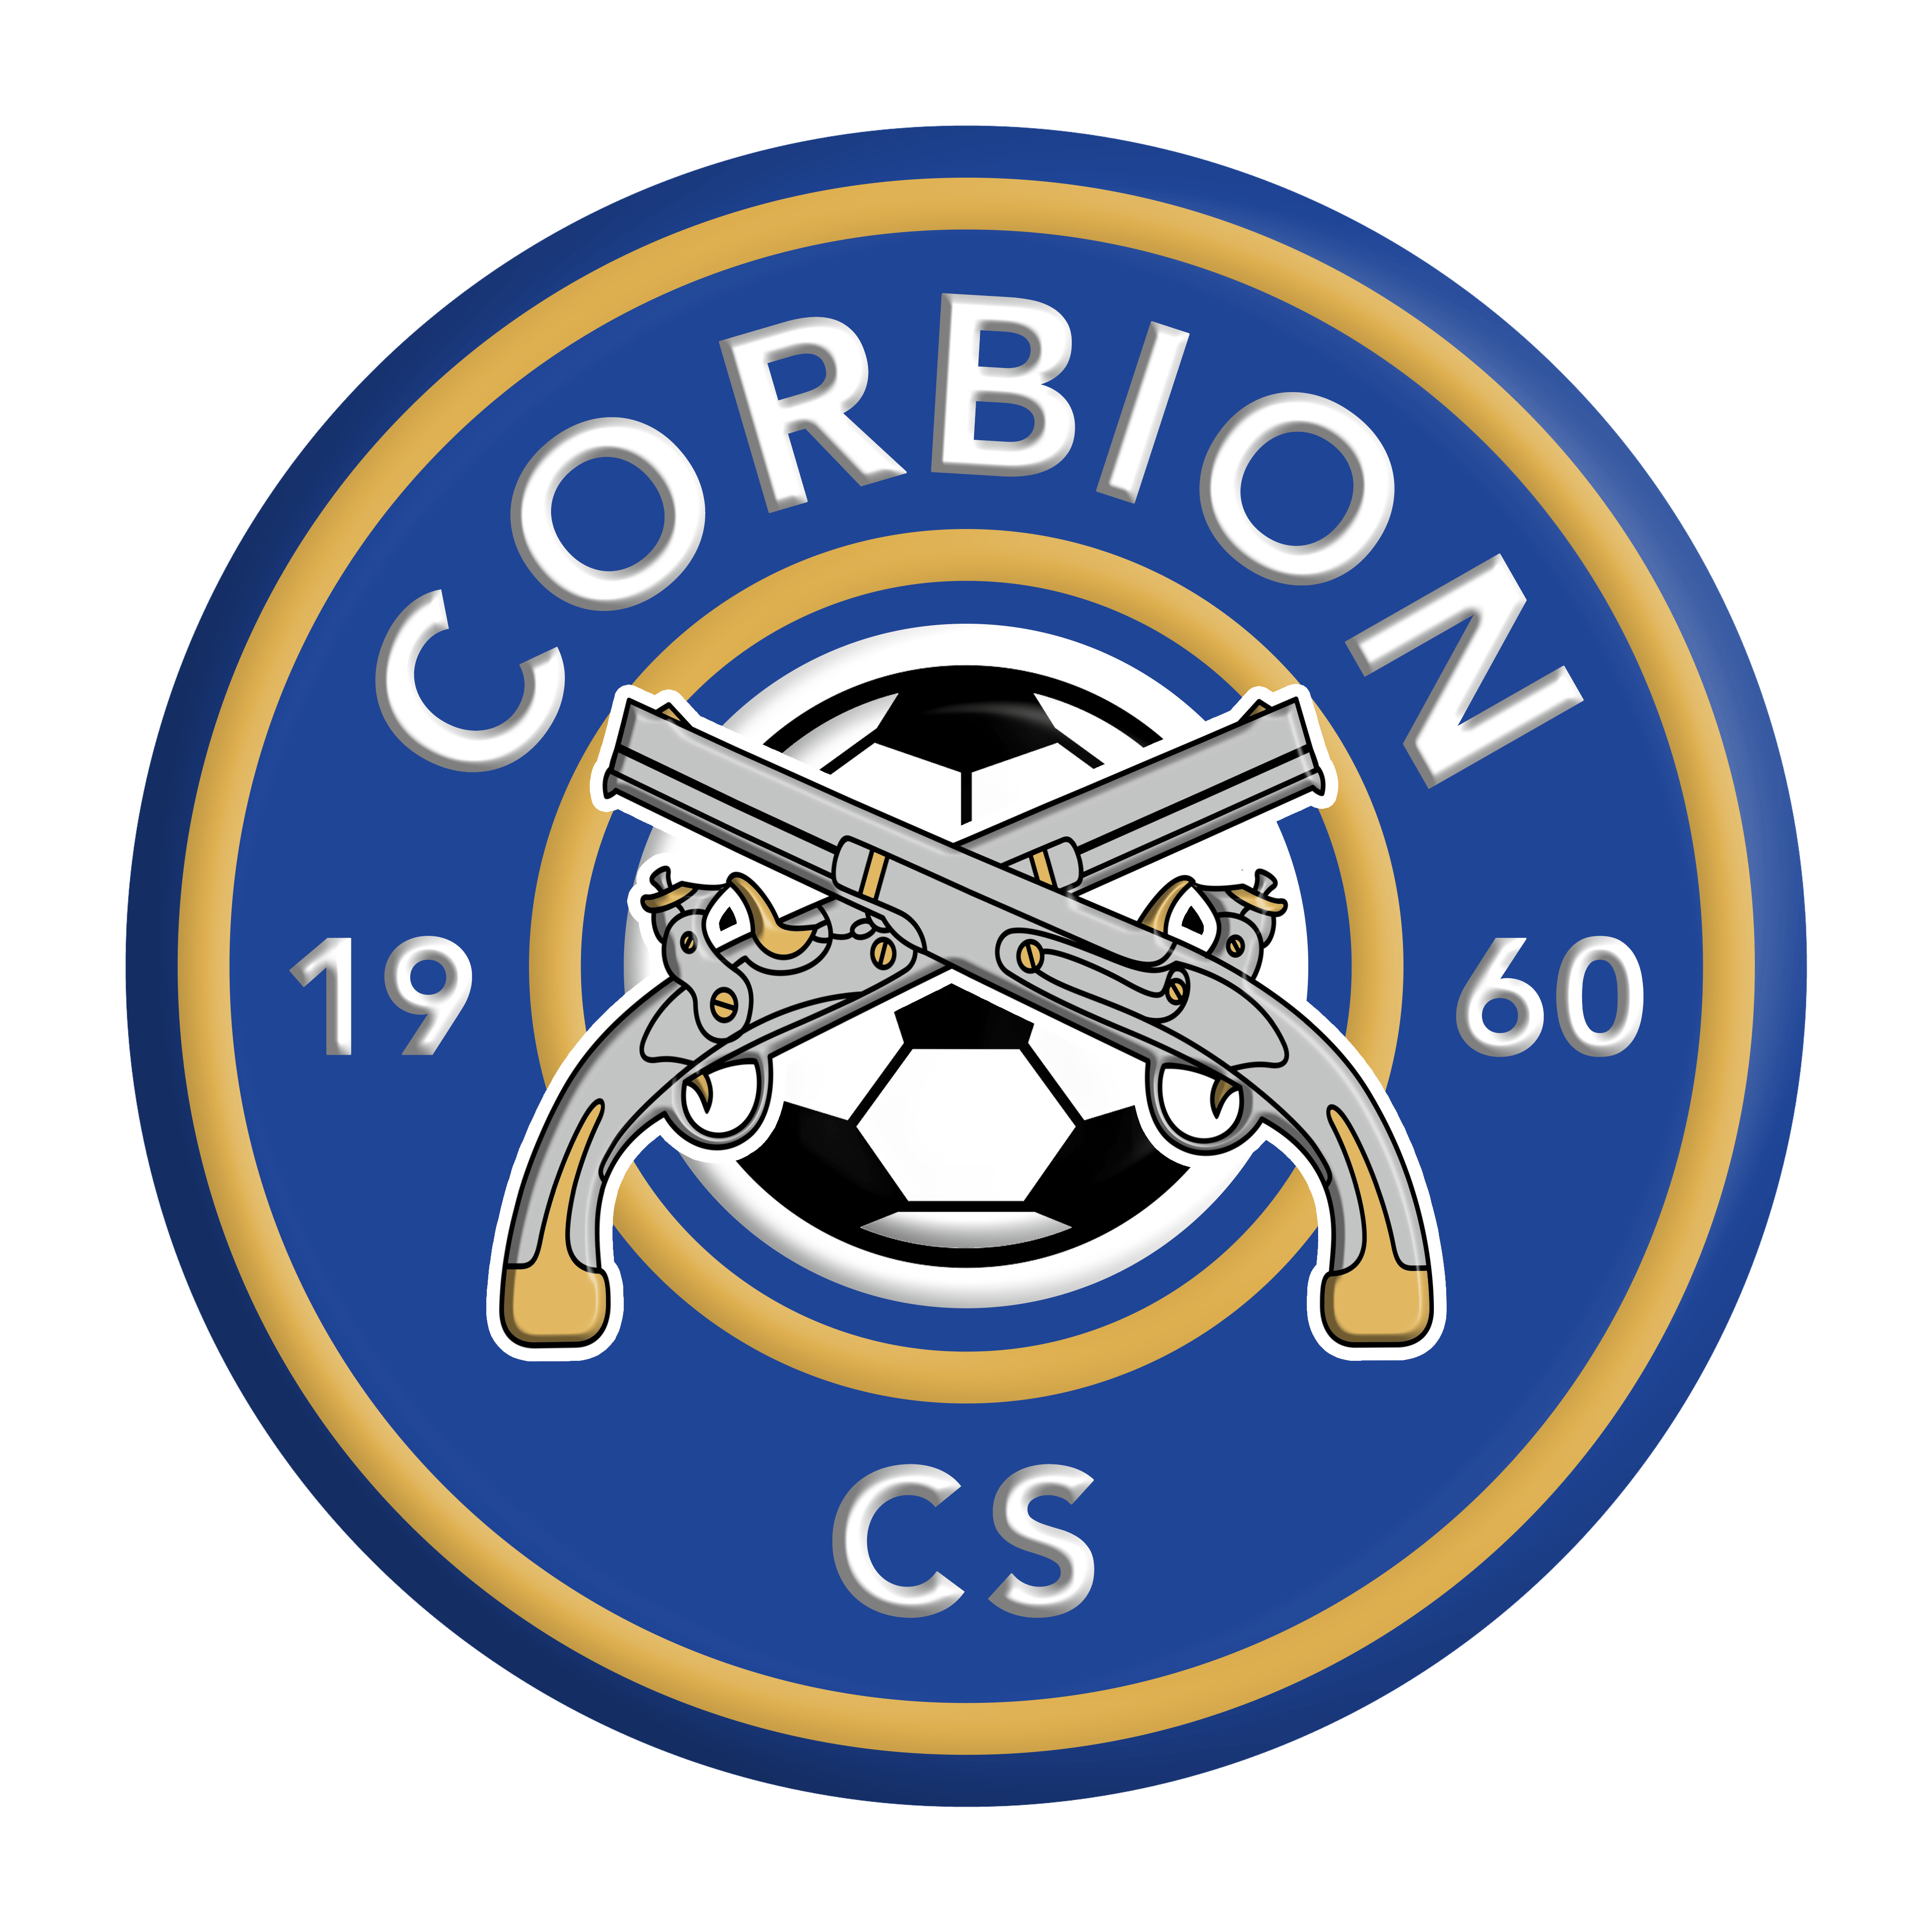 9 - Corbion